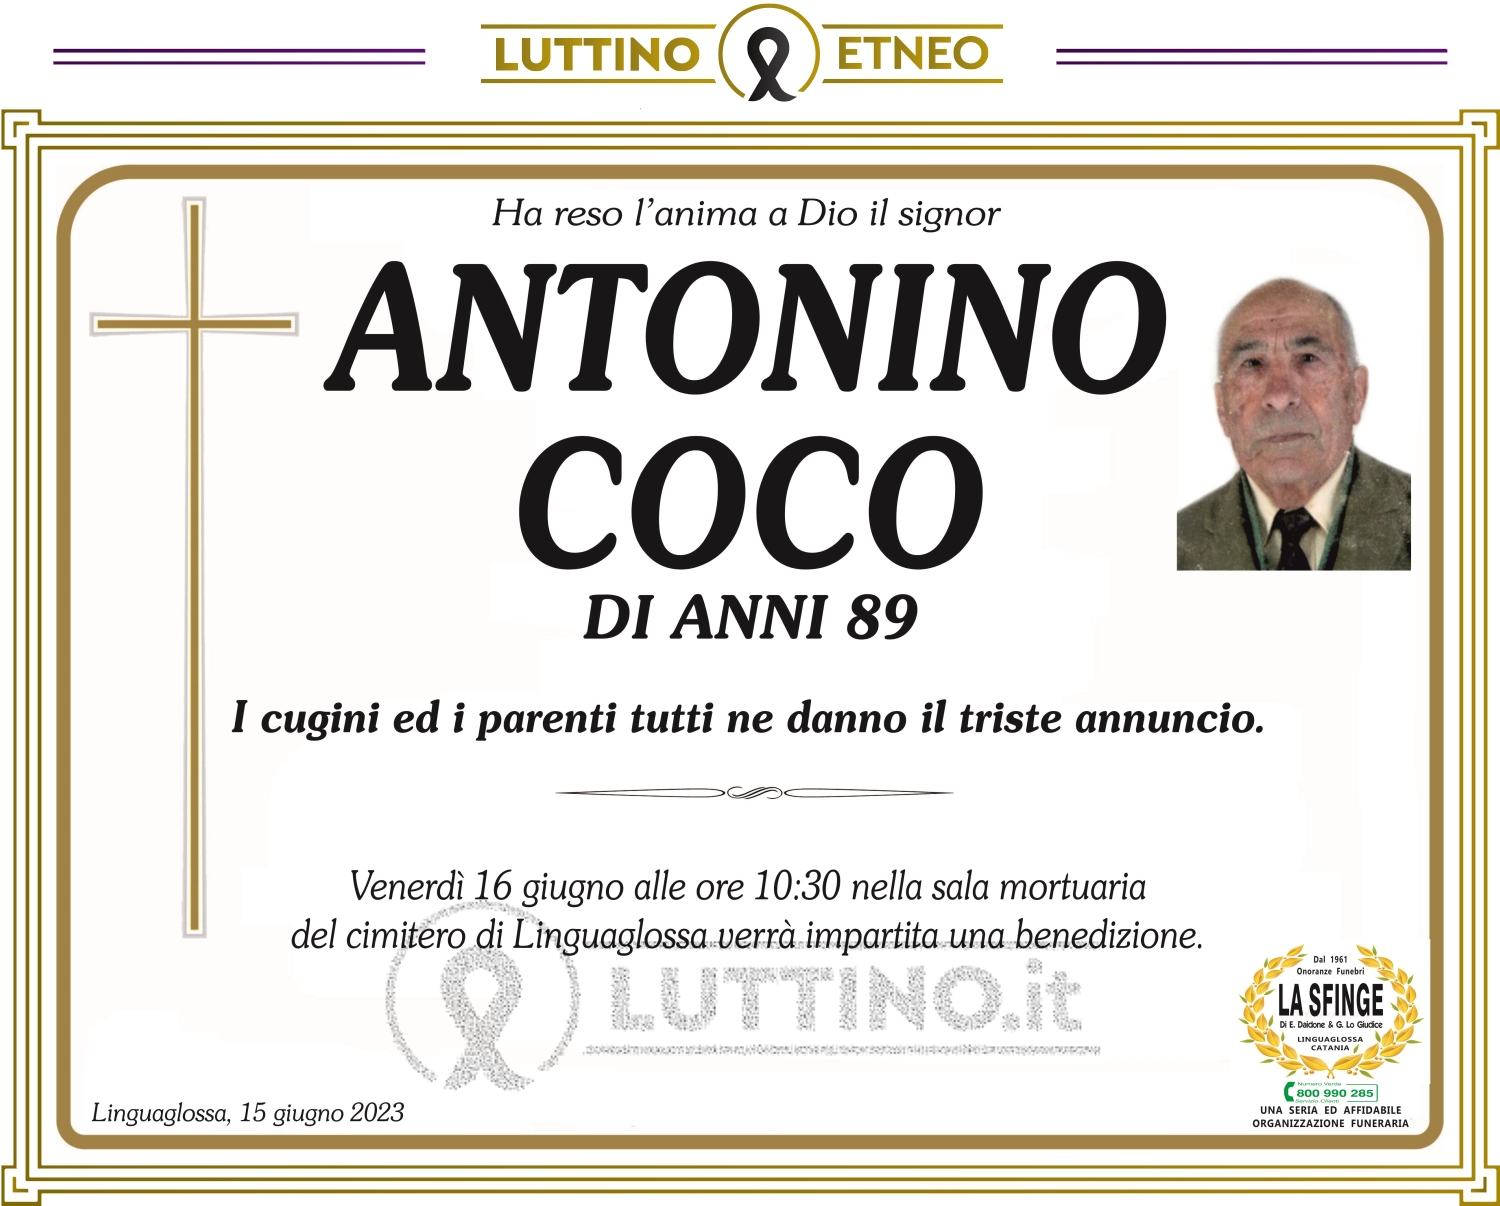 Antonino Coco